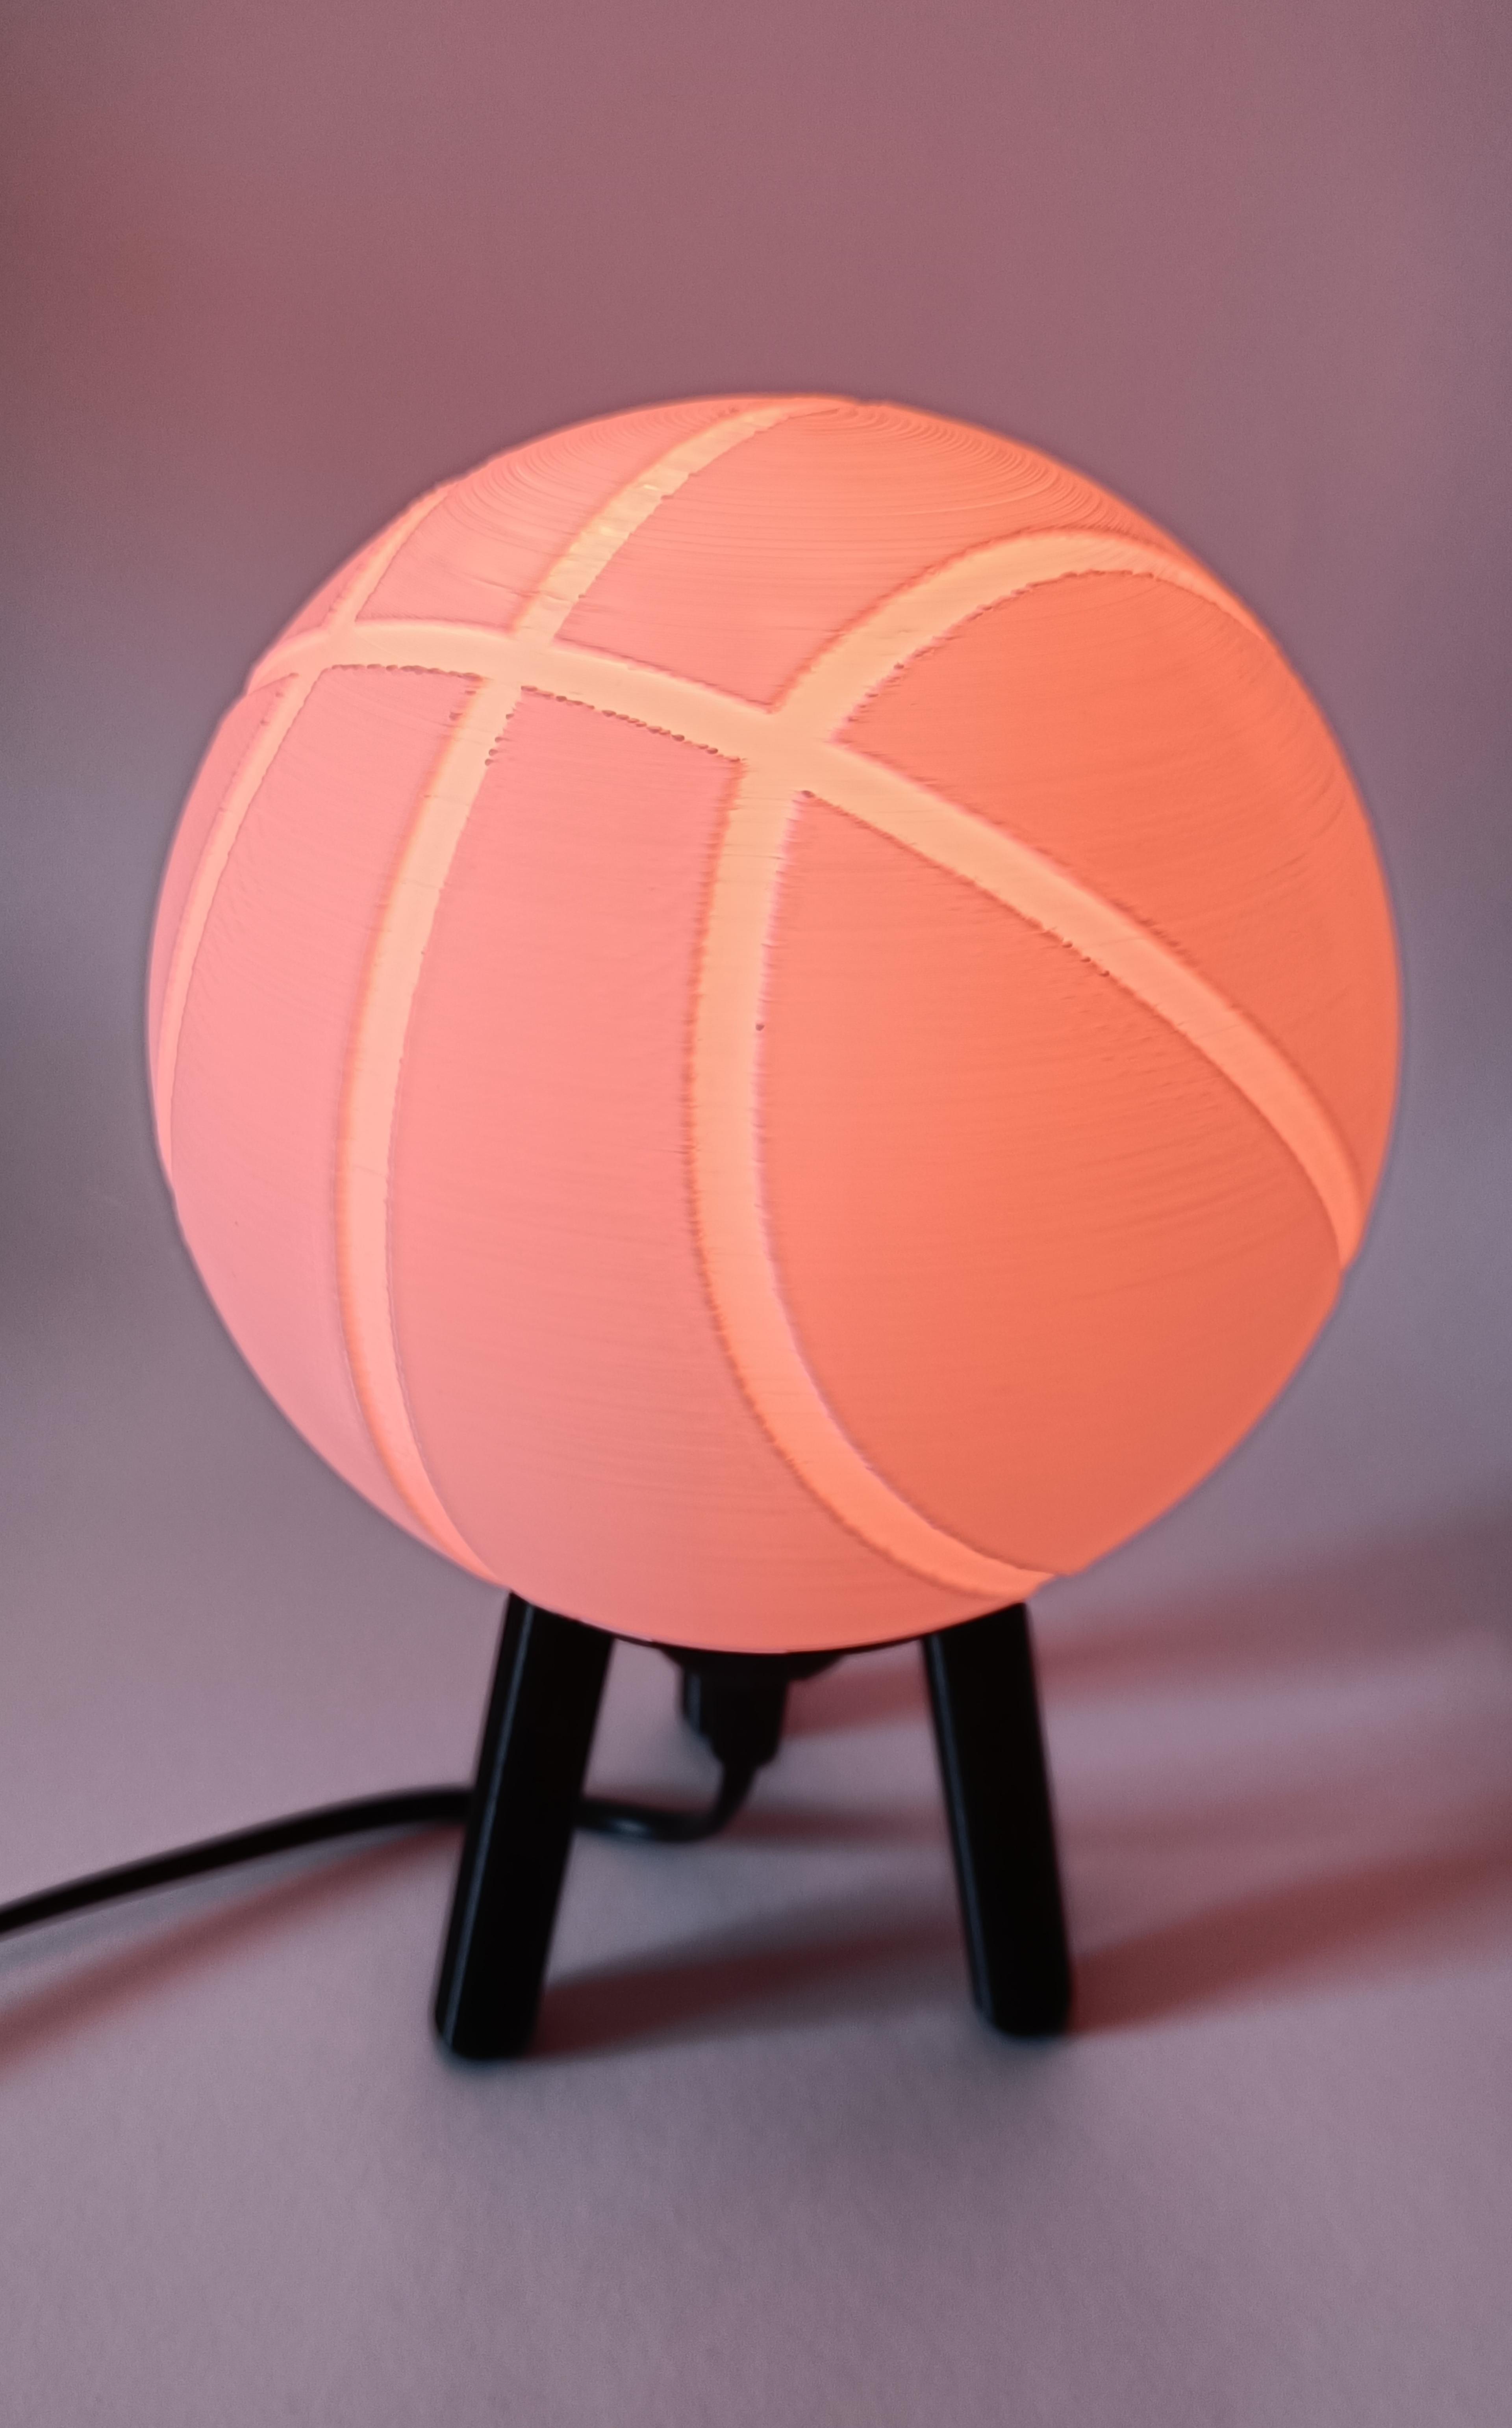 Hybrid Hanging/Desk Basketball Lamp 3d model